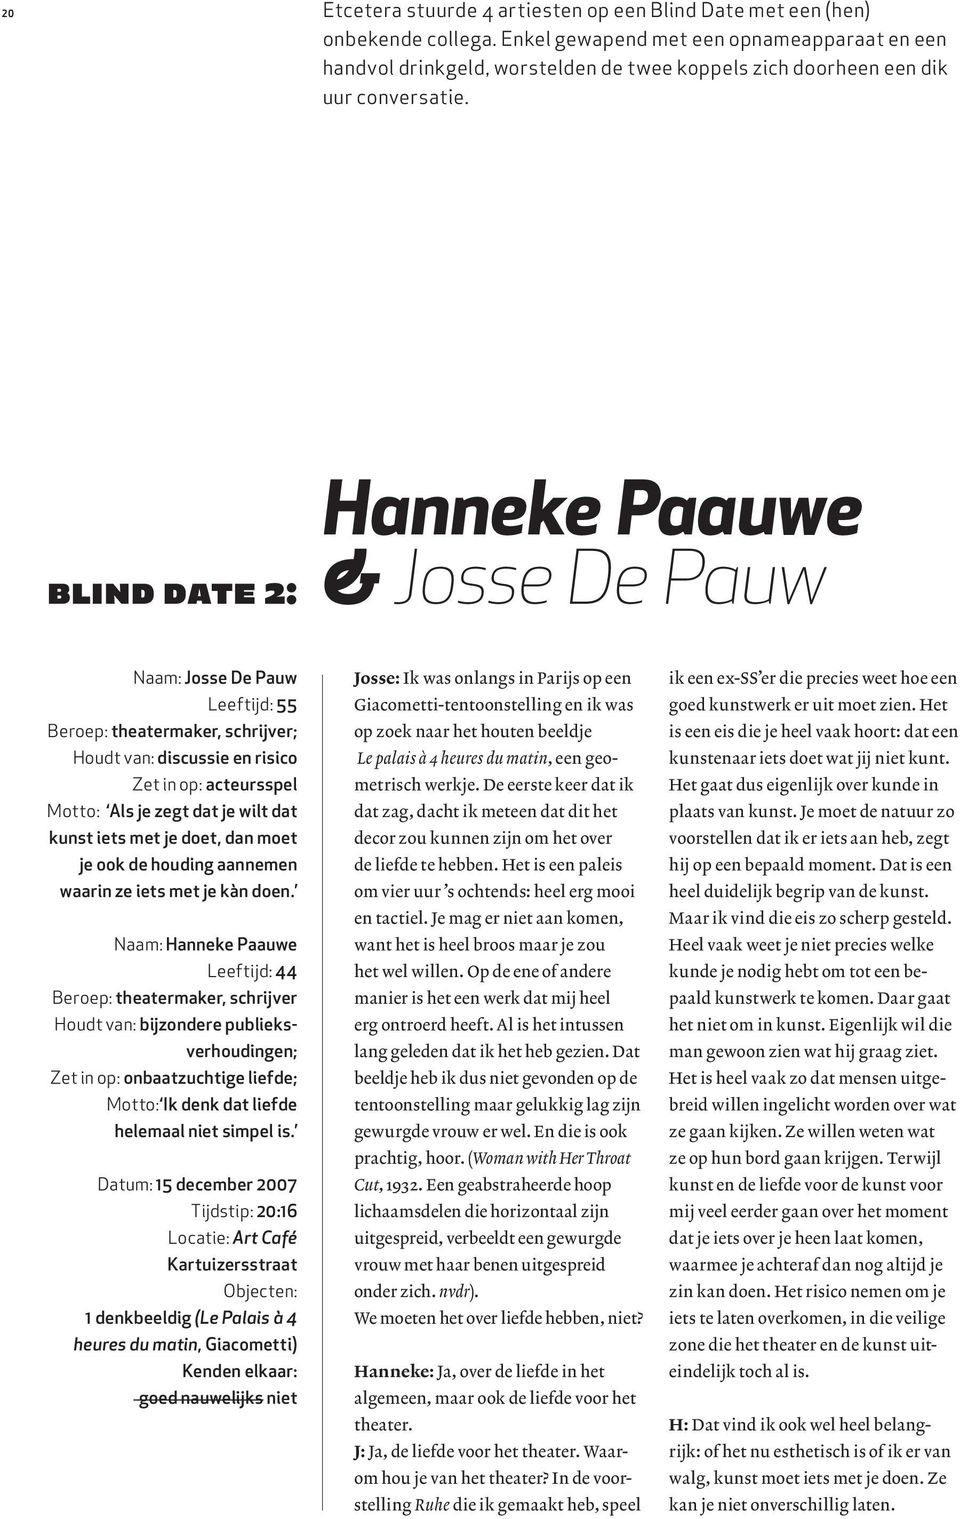 blind date 2: Hanneke Paauwe & Josse De Pauw Naam: Josse De Pauw Leeftijd: 55 Beroep: theatermaker, schrijver; Houdt van: discussie en risico Zet in op: acteursspel Motto: Als je zegt dat je wilt dat